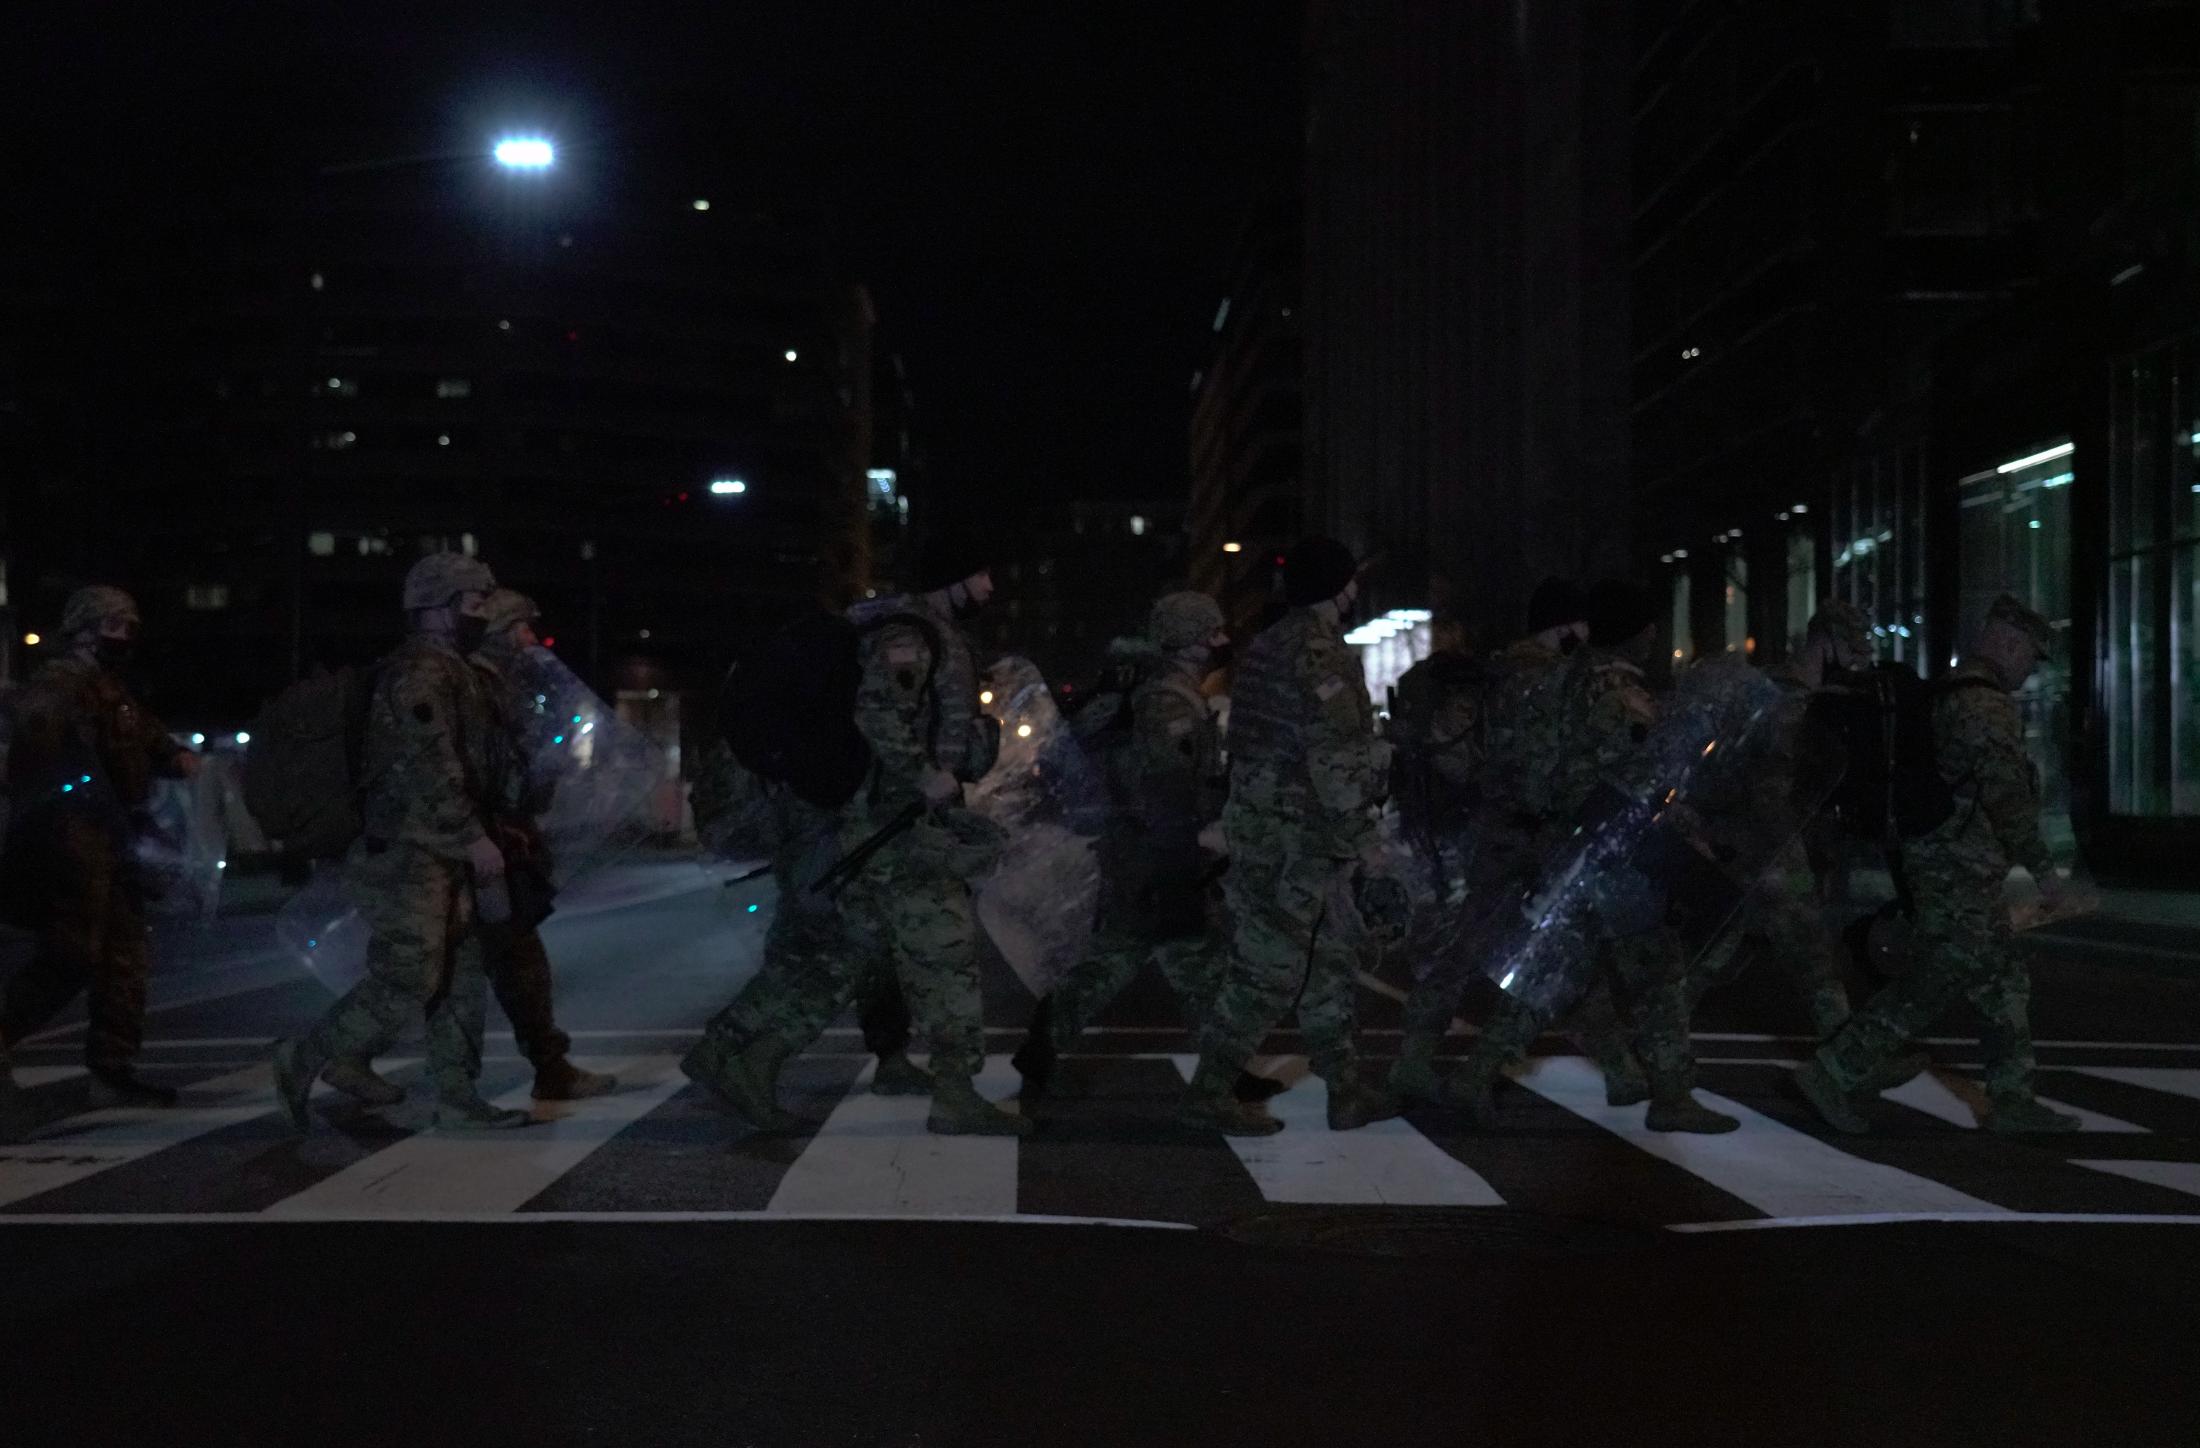 Occupied - National Guardsmen walk across a cross-walk during a...